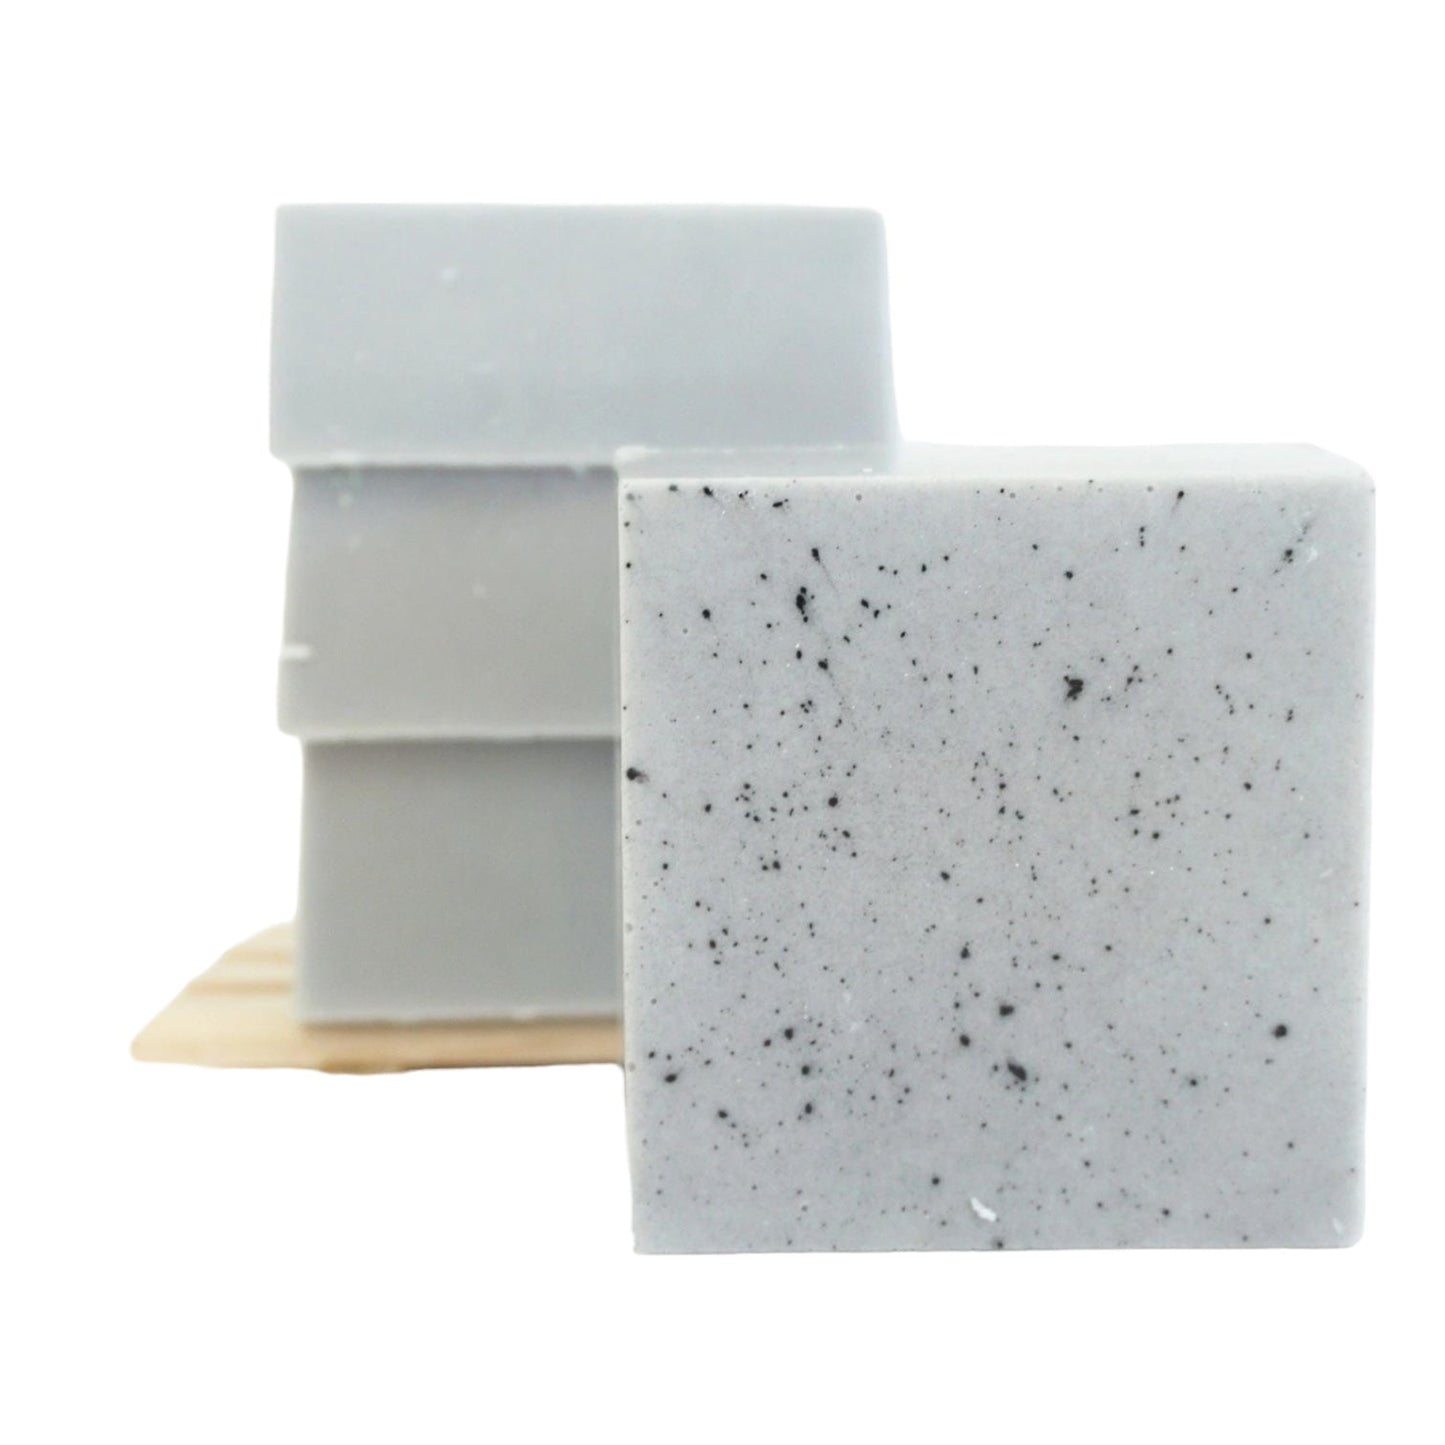 Lavish Soap Bar - Organically Bath & Beauty